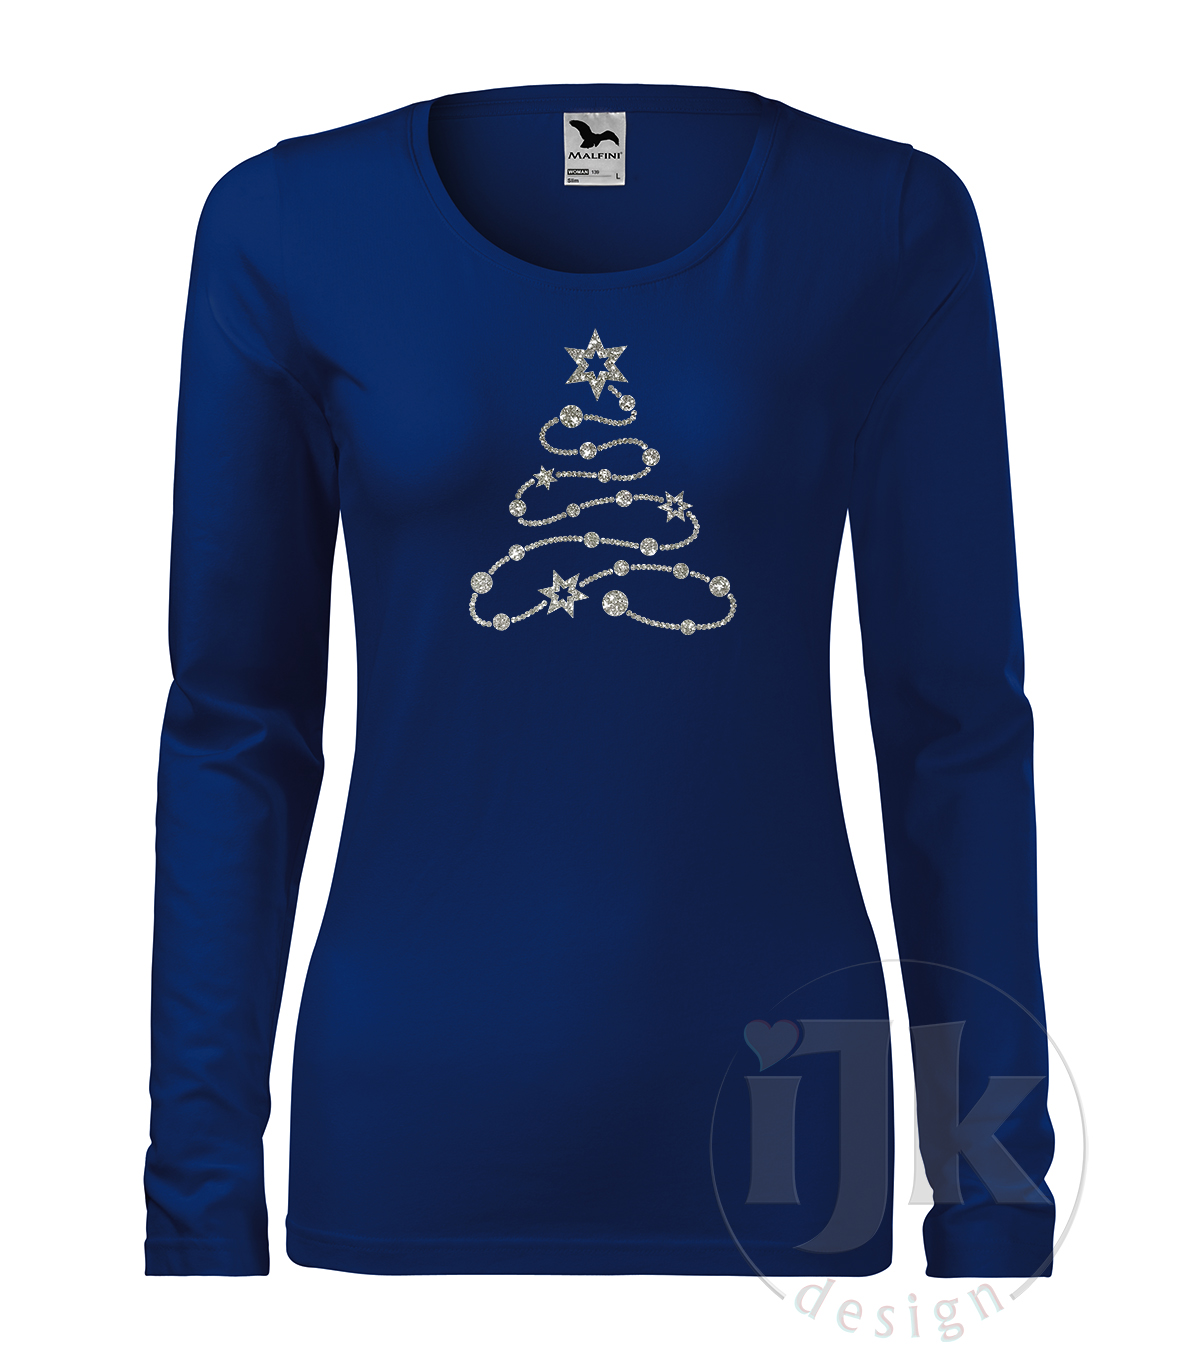 Dámske tričko farba kráľovská modrá s potlačou, so striebornou glitrovou fóliou, s autorským zimným vzorom, s vianočným motívom - symbolom Vianoc - vianočným stromčekom, ktorý je vytvorený z ozdobnej reťaze a s dlhým rukávom.